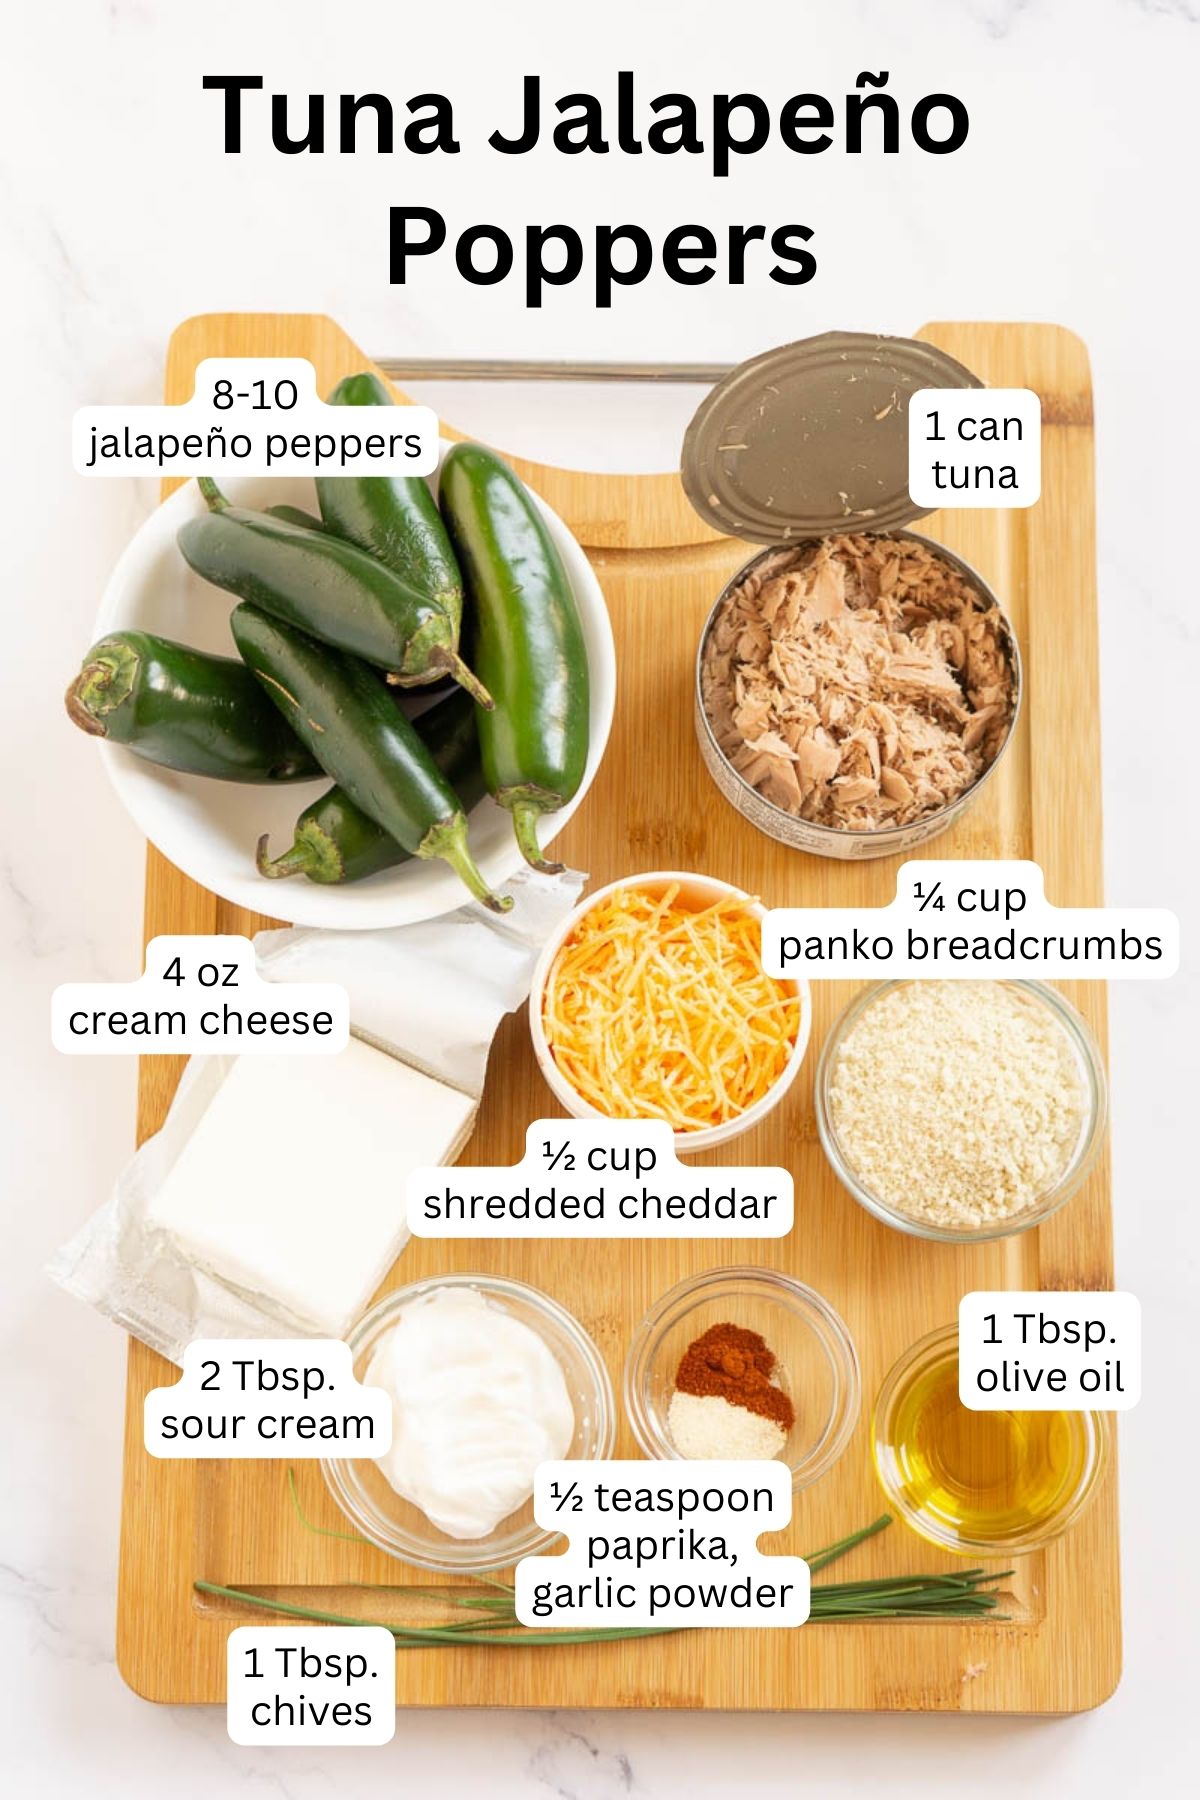 Ingredients to make tuna stuffed jalapeño poppers